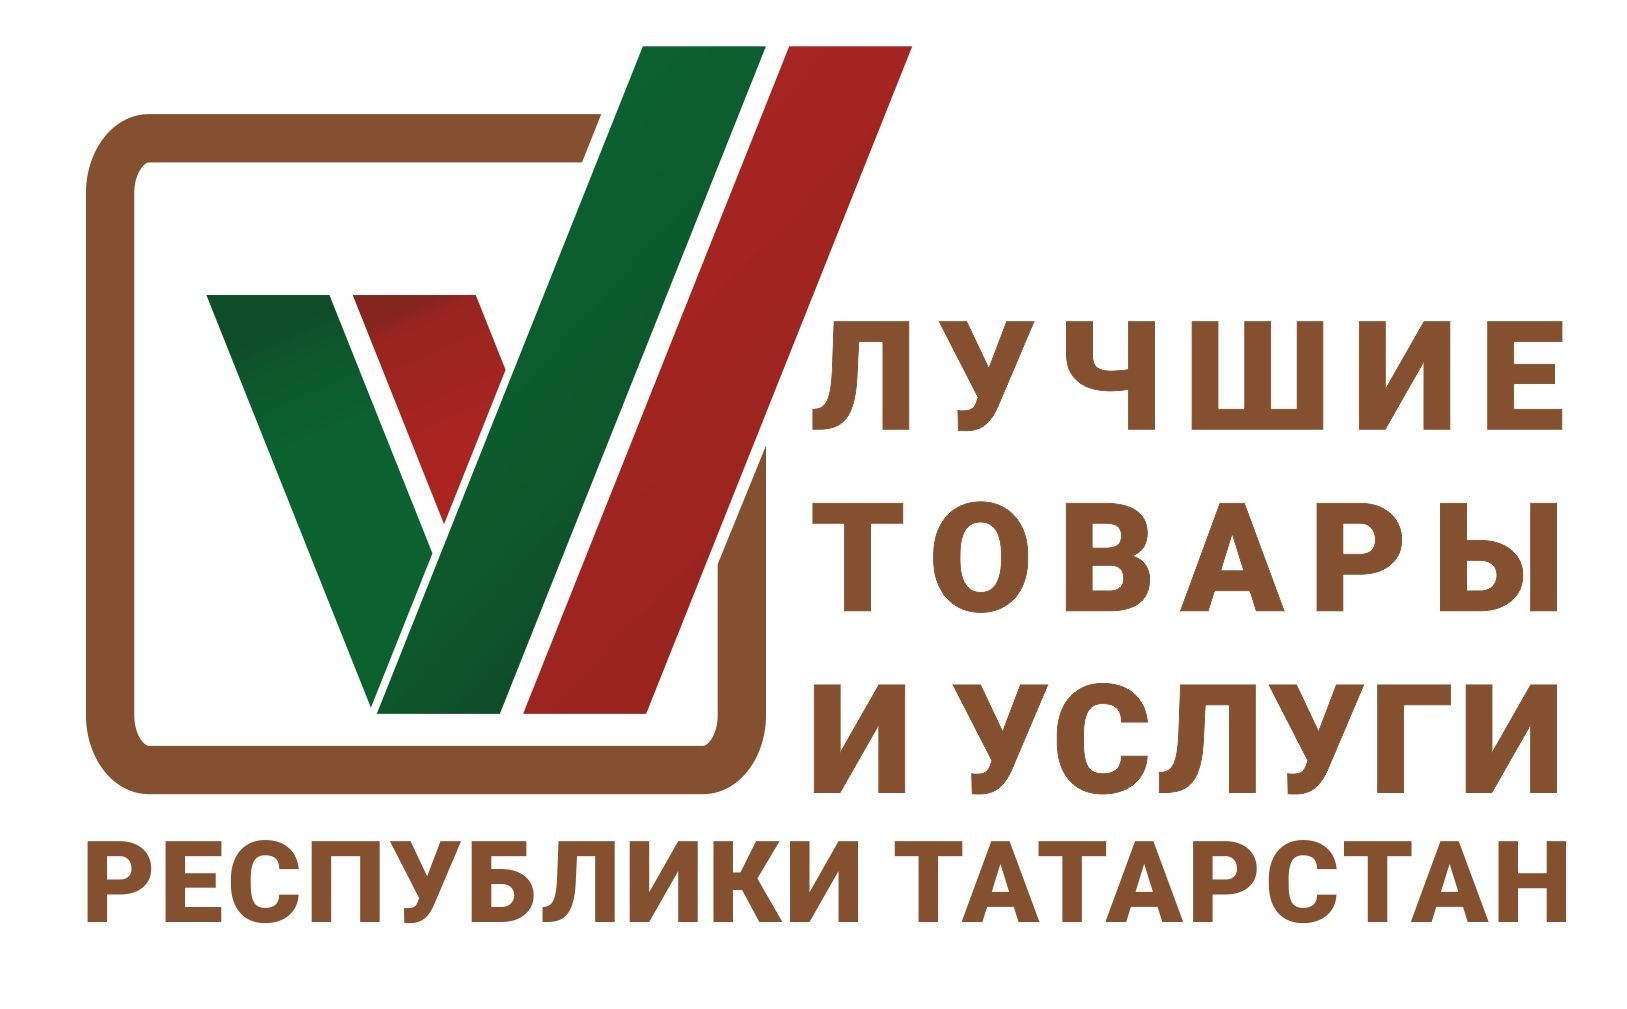 «Лучшие товары и услуги Республики Татарстан» - это «Азбука сыра»